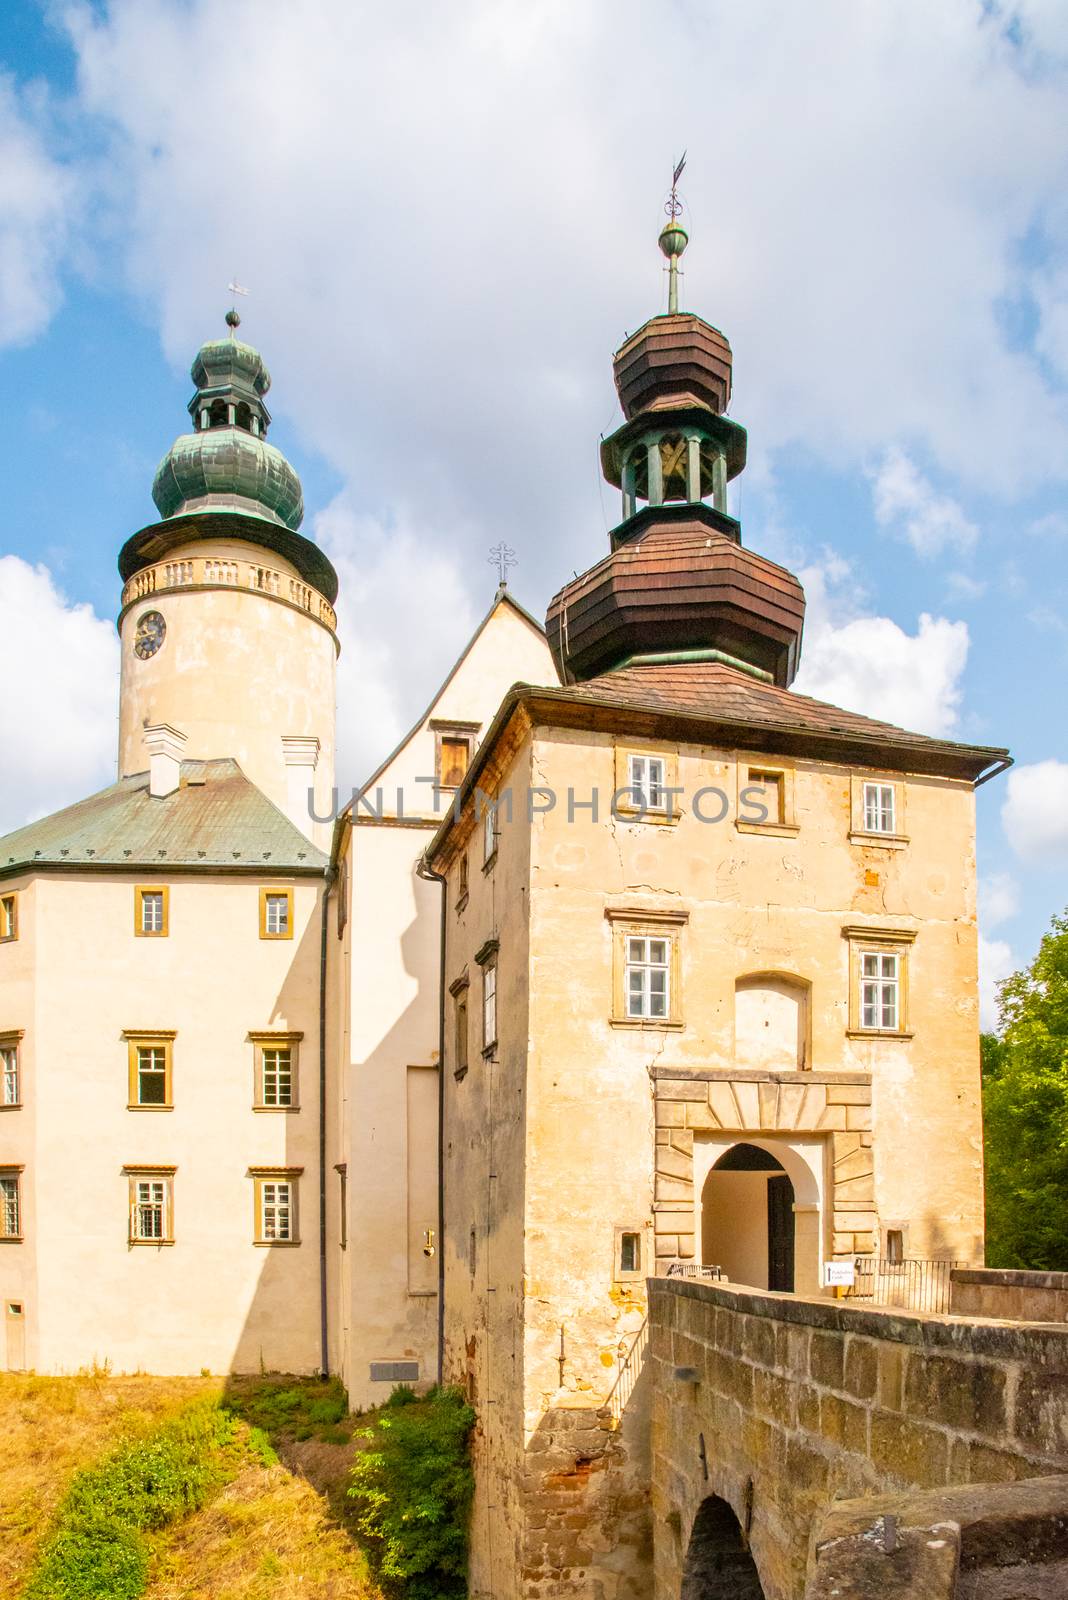 Lemberk Castle in northern Bohemia, Jablonne v Podjestedi, Czech Republic by pyty